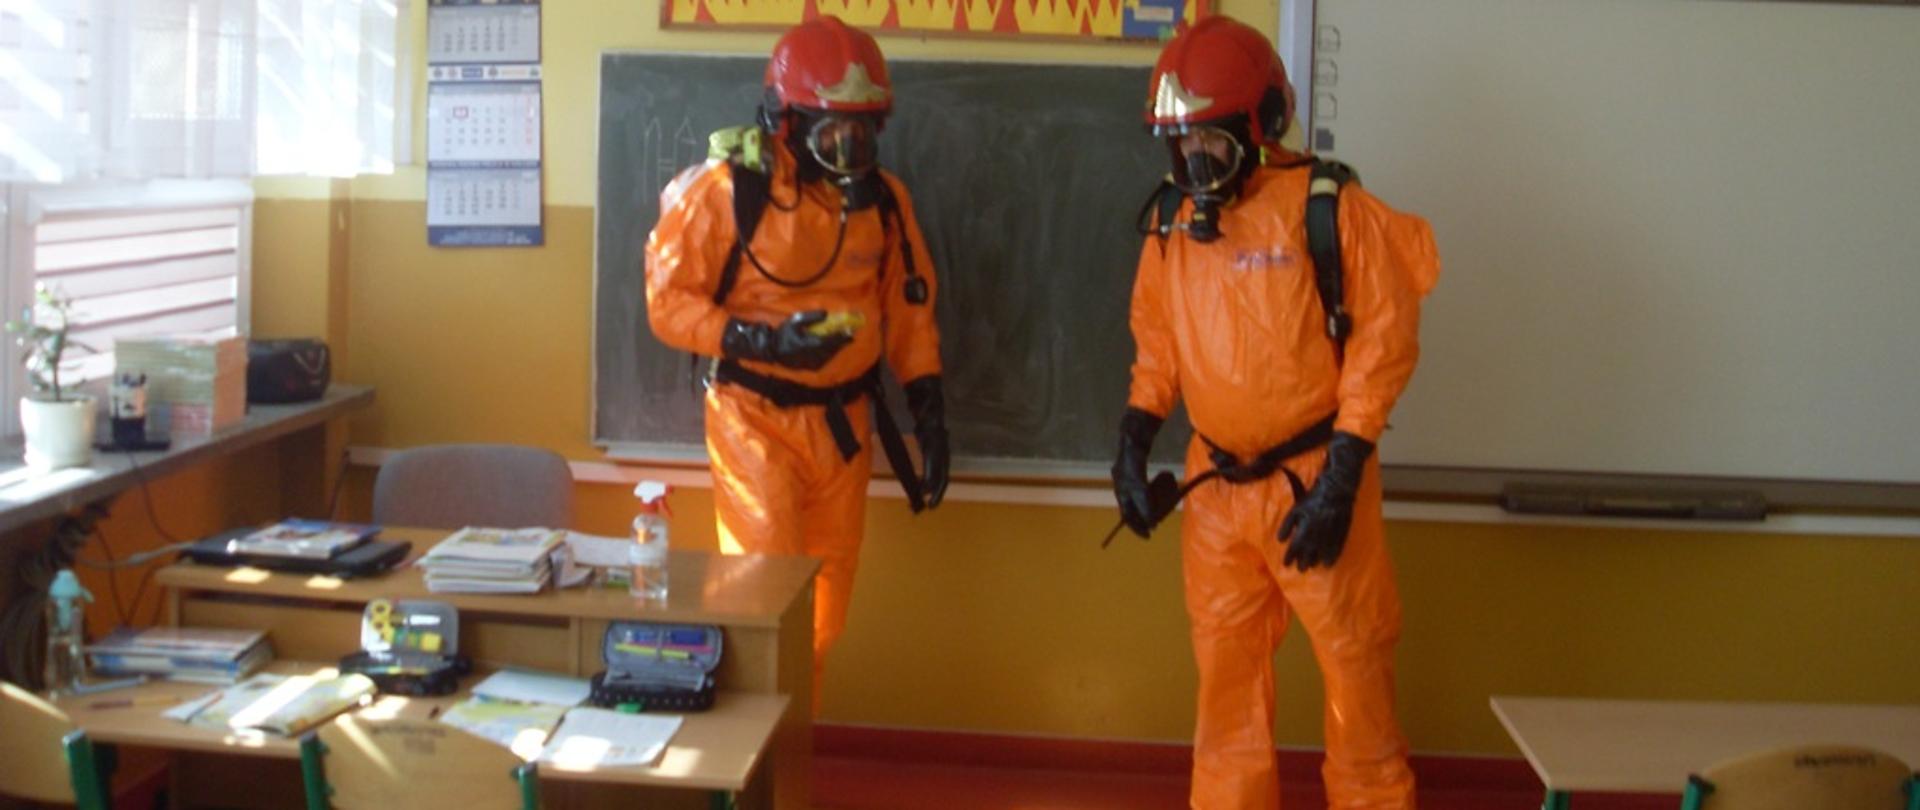 Zdjęcie przedstawia dwóch strażaków w ubraniu ochrony chemicznej, dokonujący pomiaru miernikiem wielogazowym jednego z pomieszczeń klasowych.